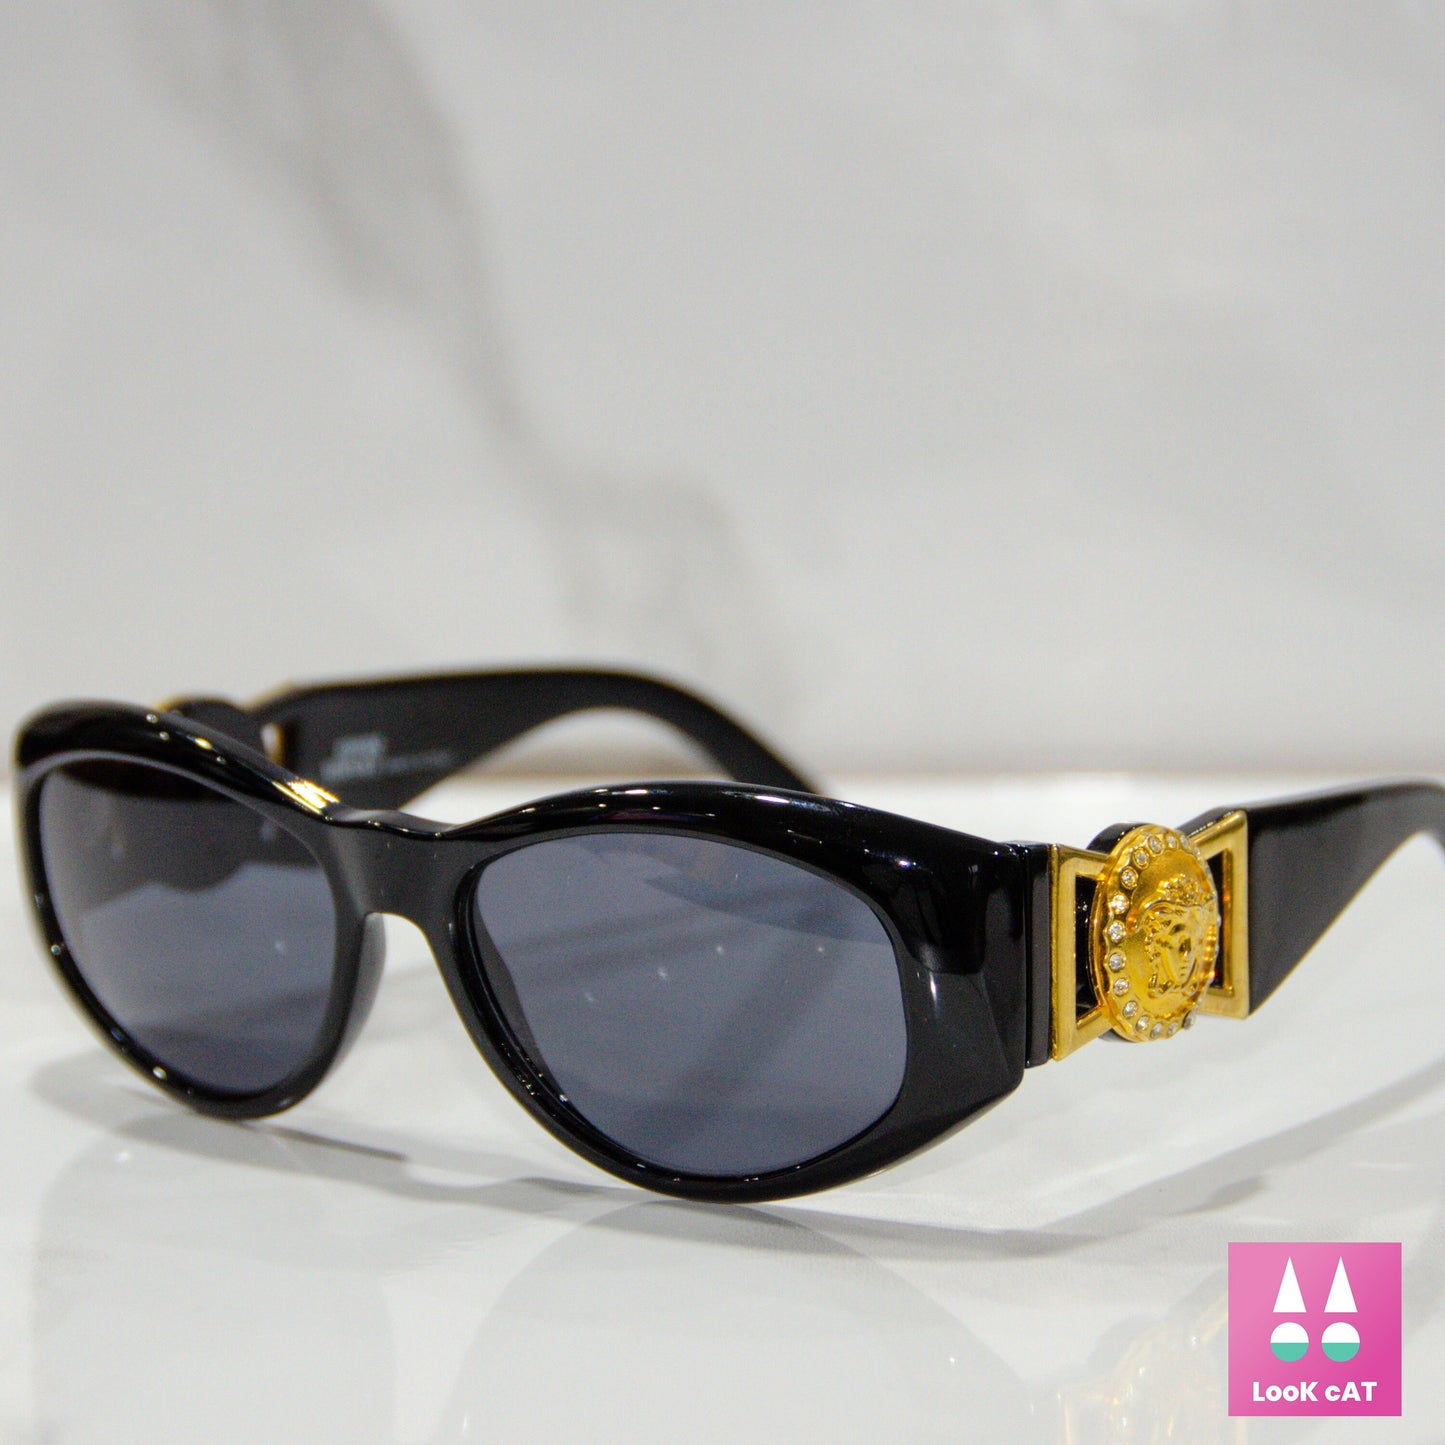 Gianni Versace 太阳镜 mod 424 strass lunette brille 太阳镜 gafas